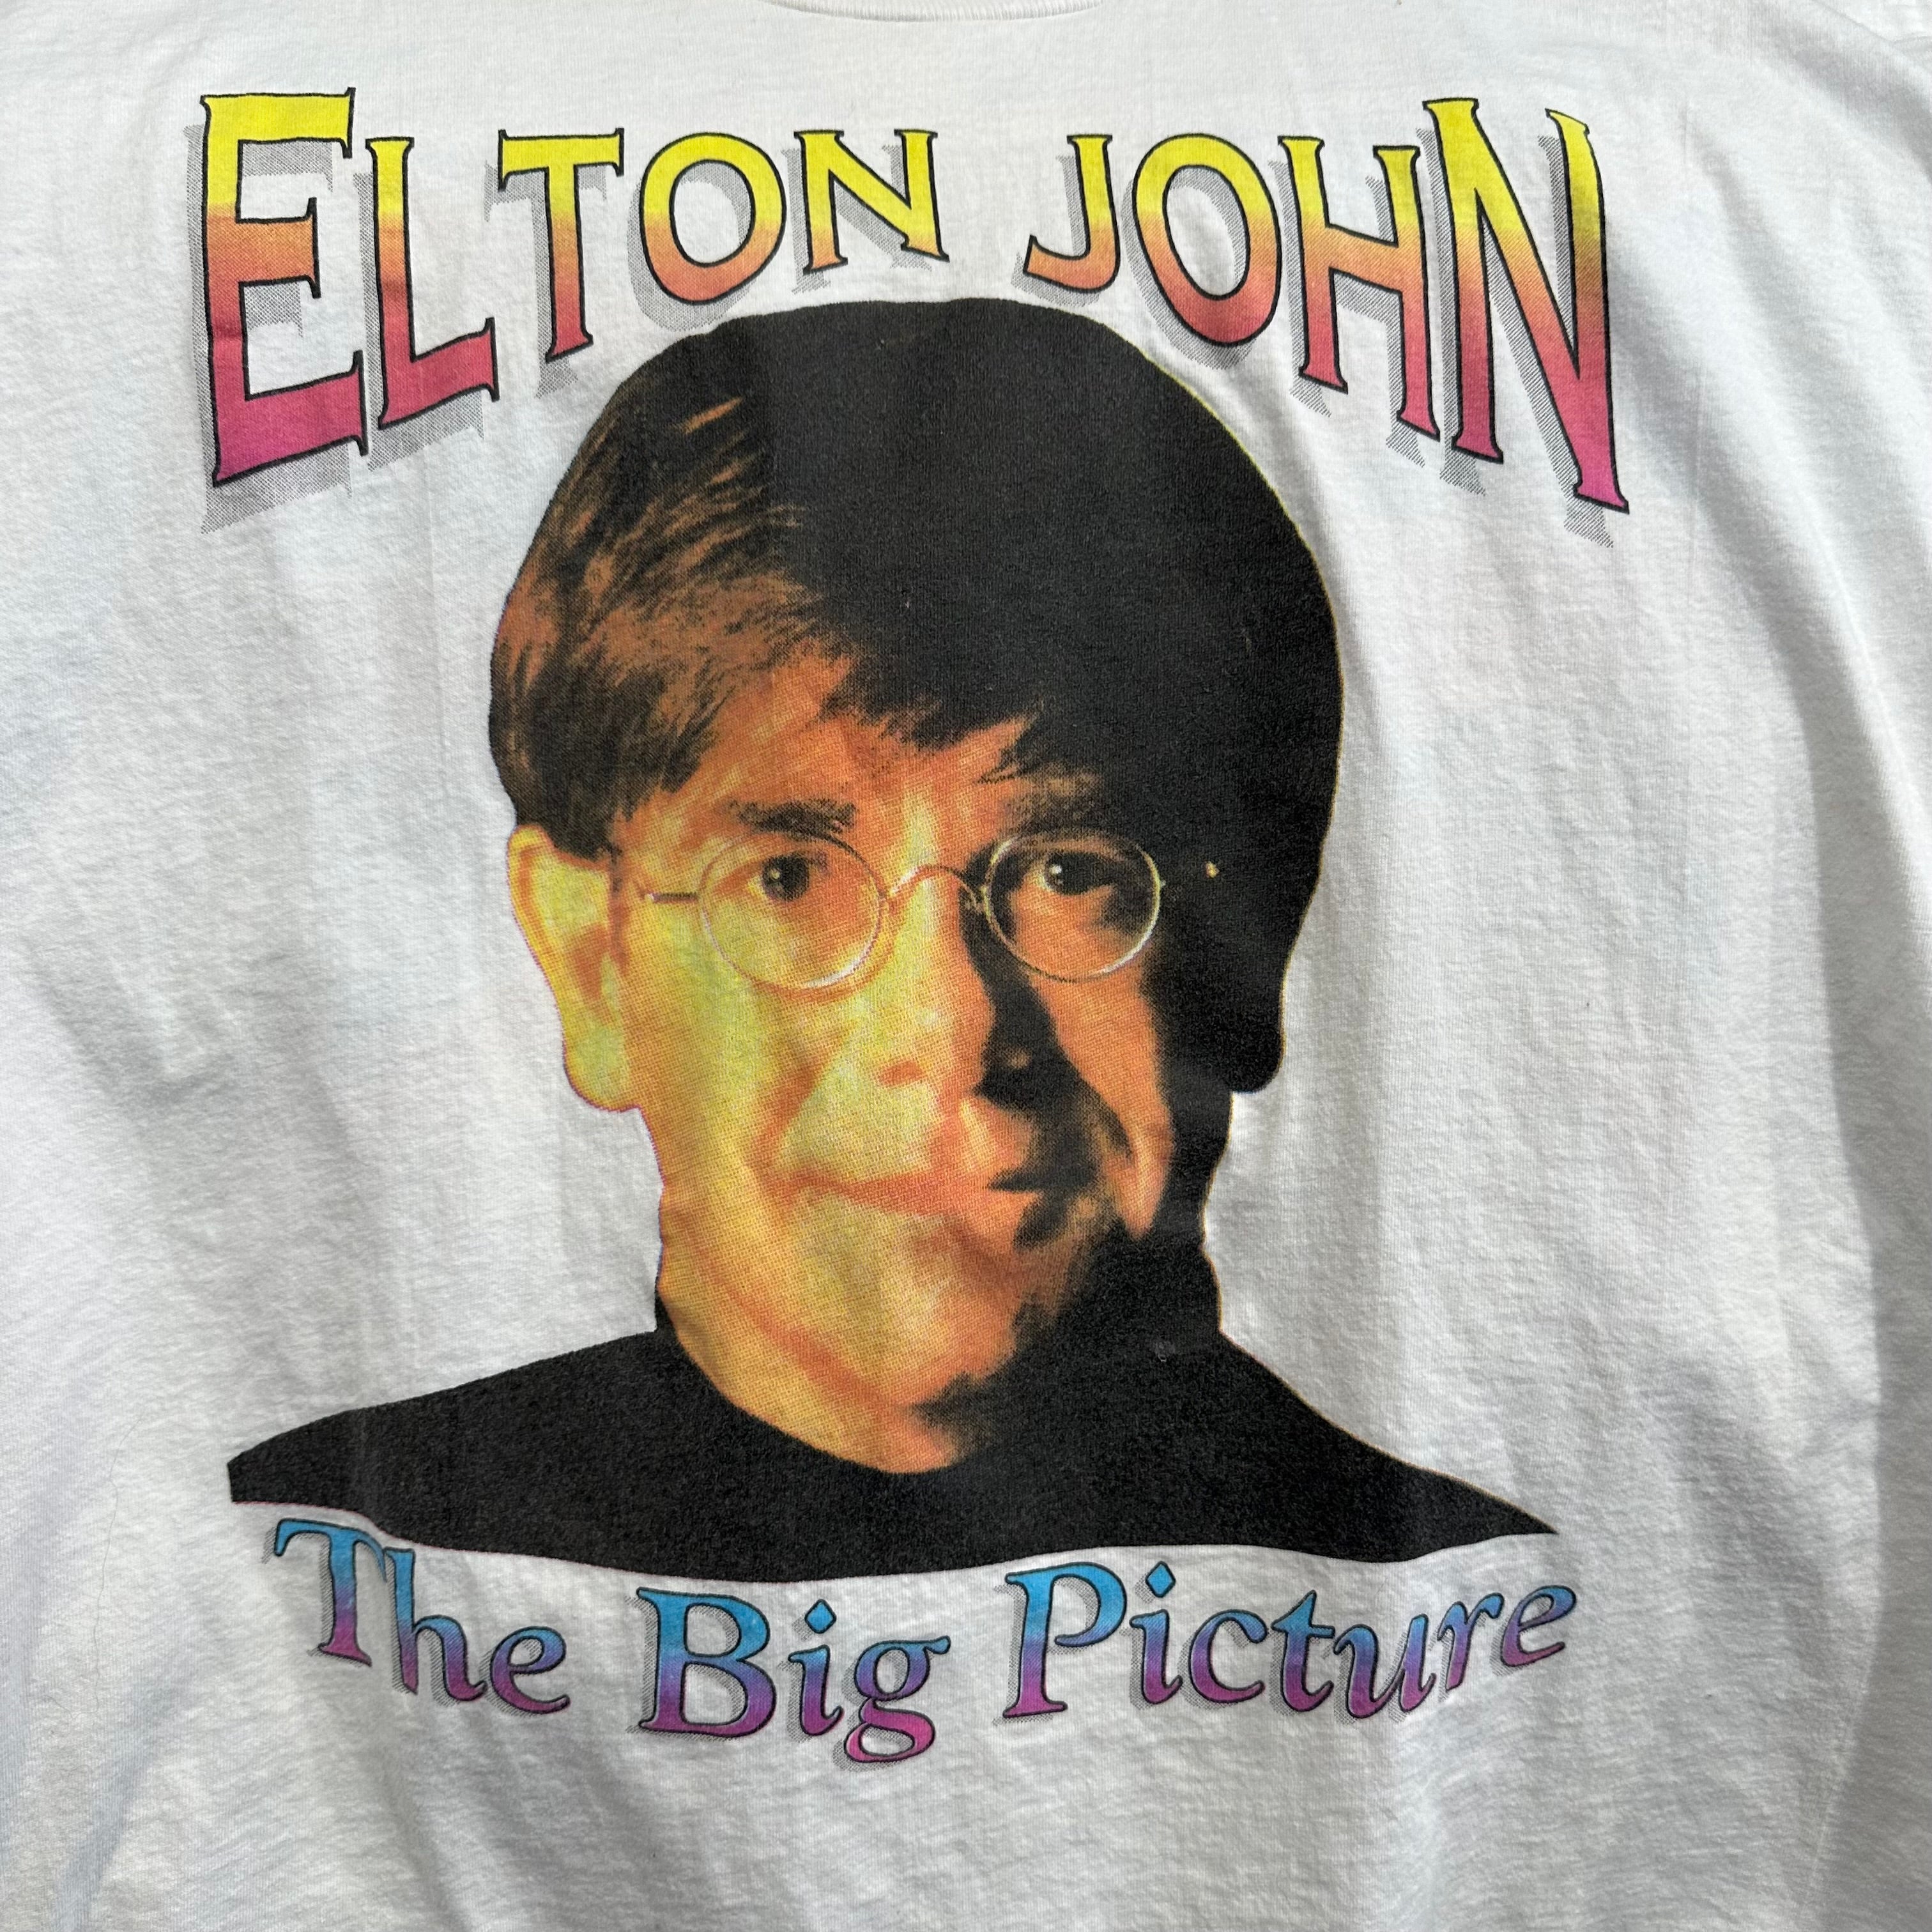 Elton John “The Big Picture” 1998 Tour T-Shirt